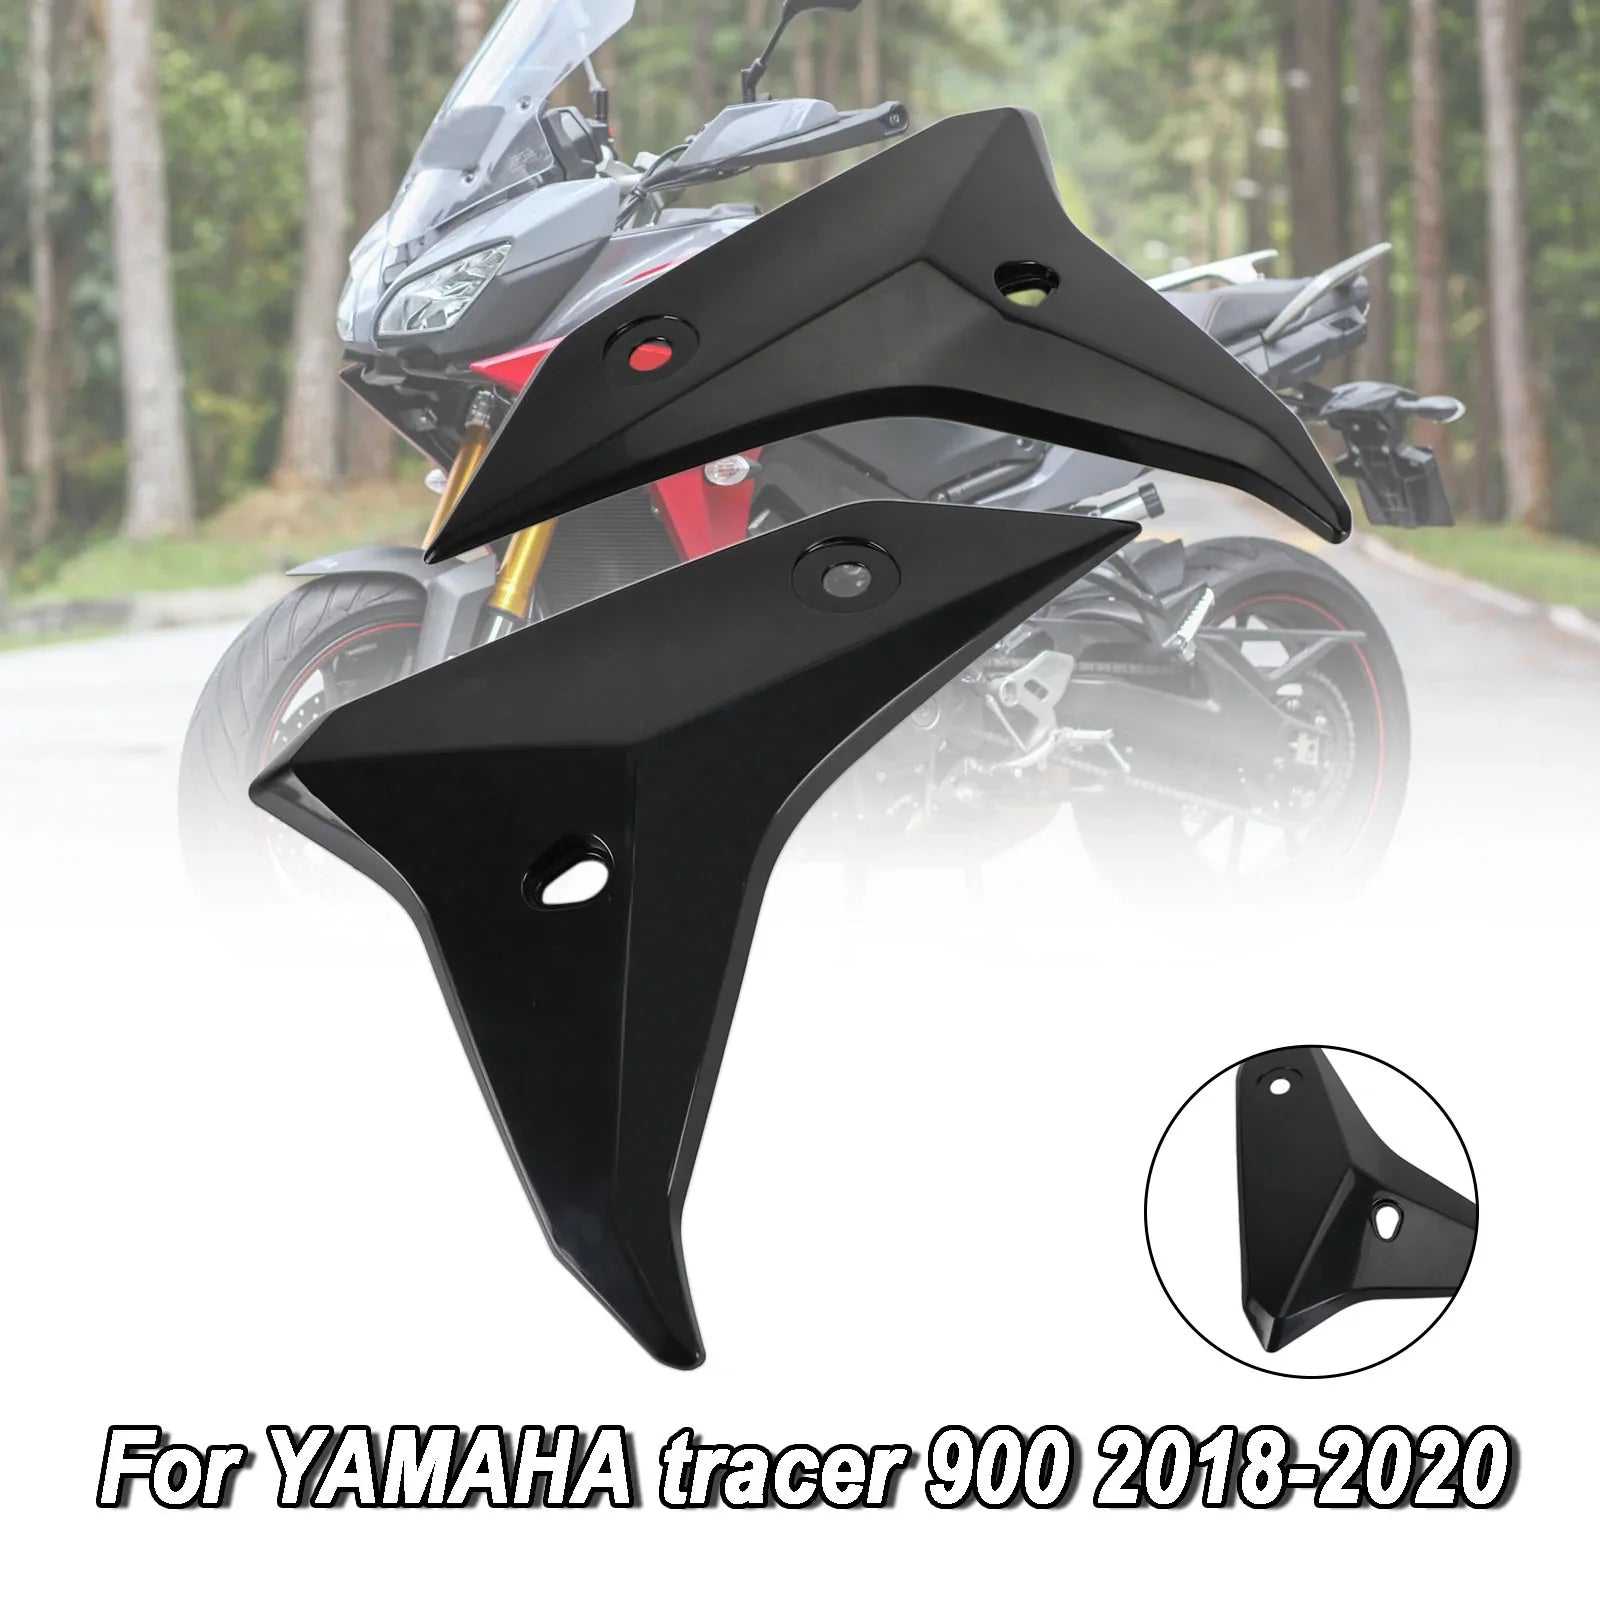 Moldeo por inyección de carenado de carrocería Yamaha Tracer 900/GT 2018-2020 sin pintar